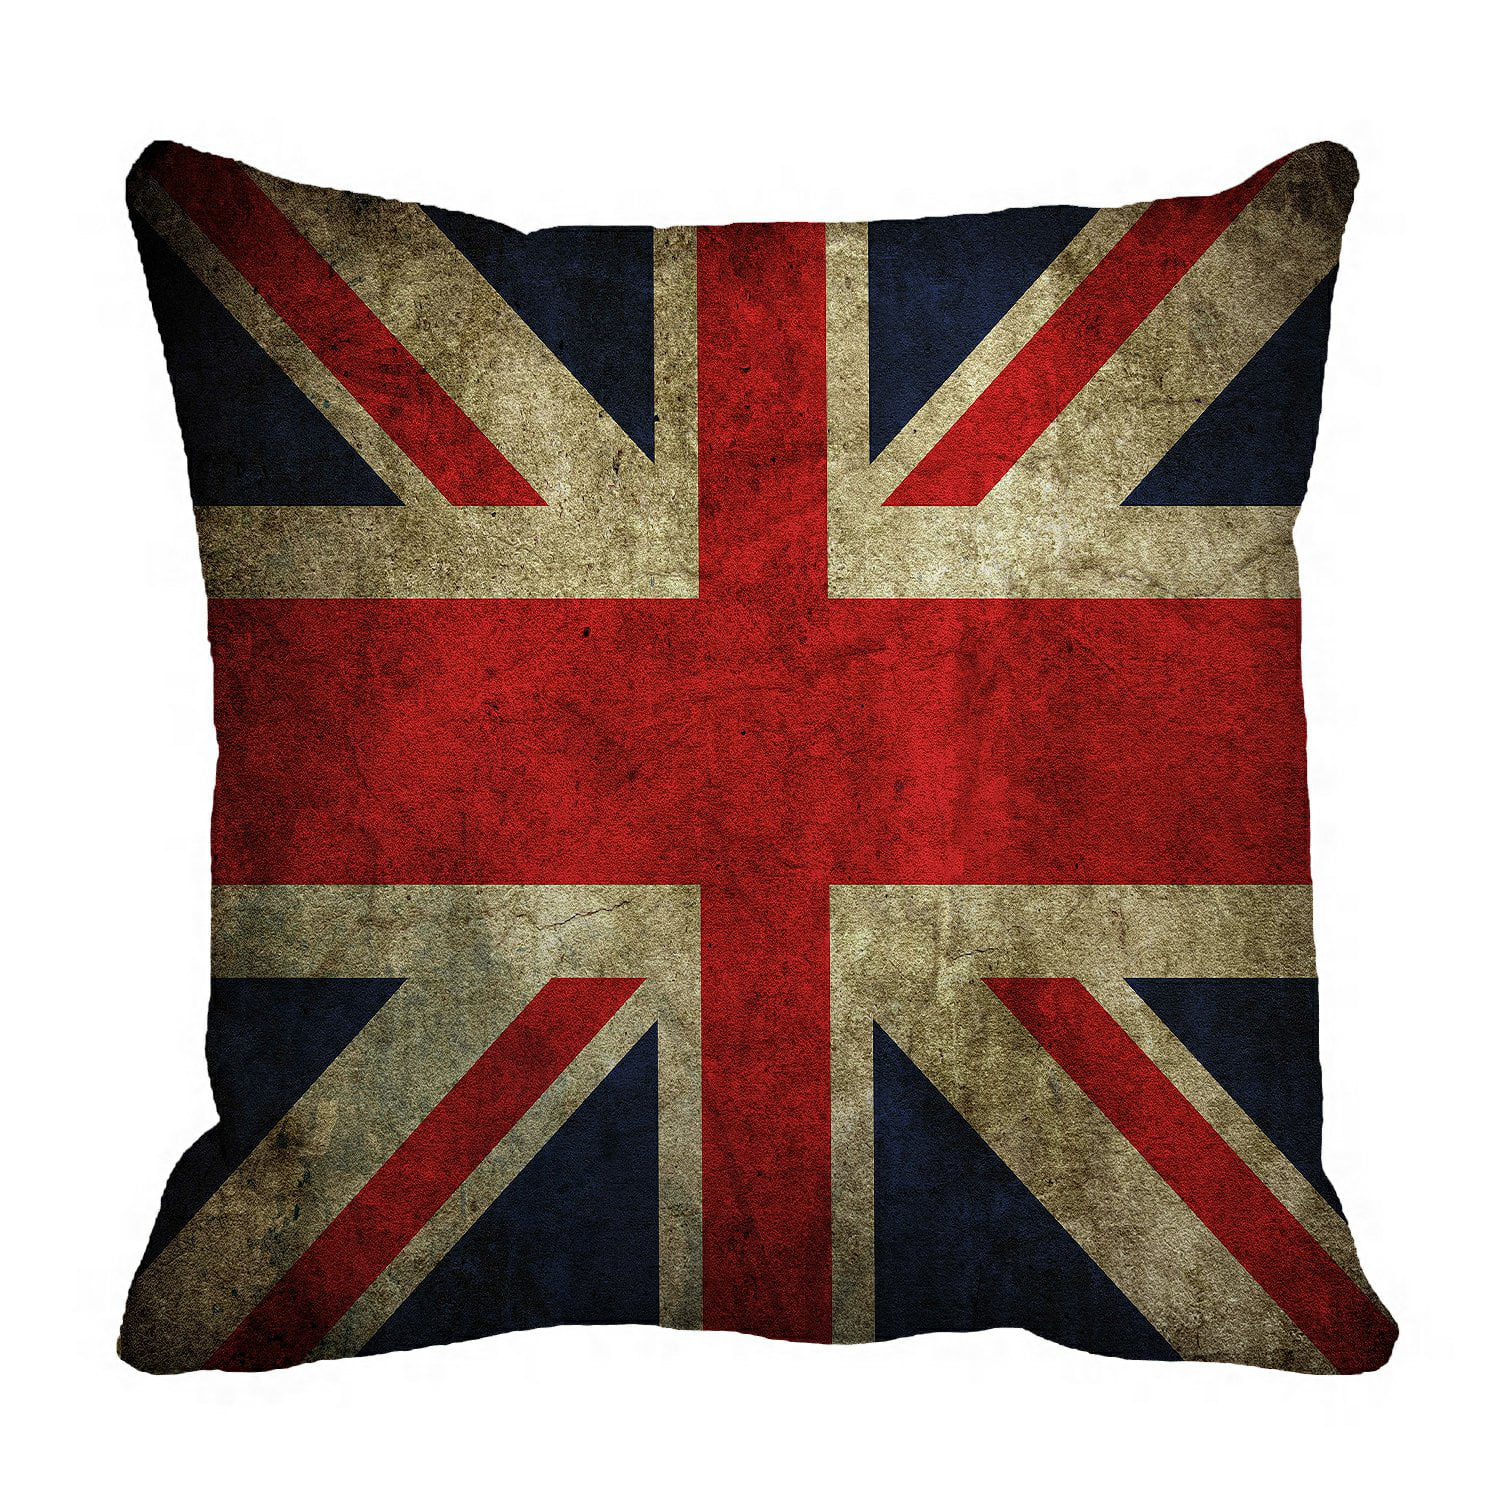 British Vintage Style Union Jack Flag Throw Pillow Case, Pillowcase Z9F5 1X BM 